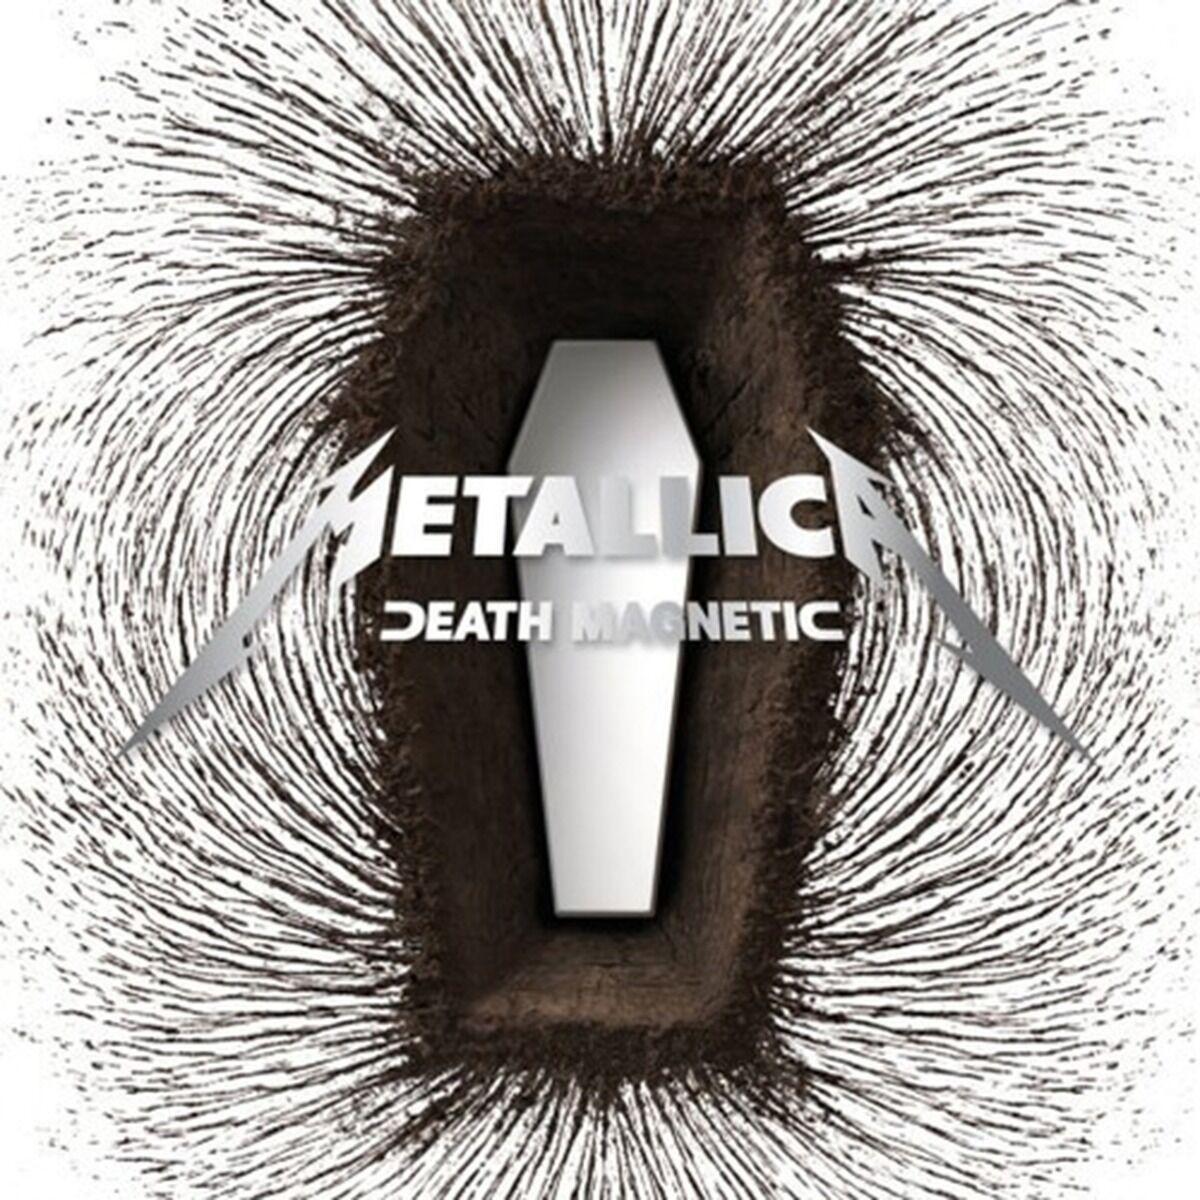 Metallica Death Magnetic 2LP